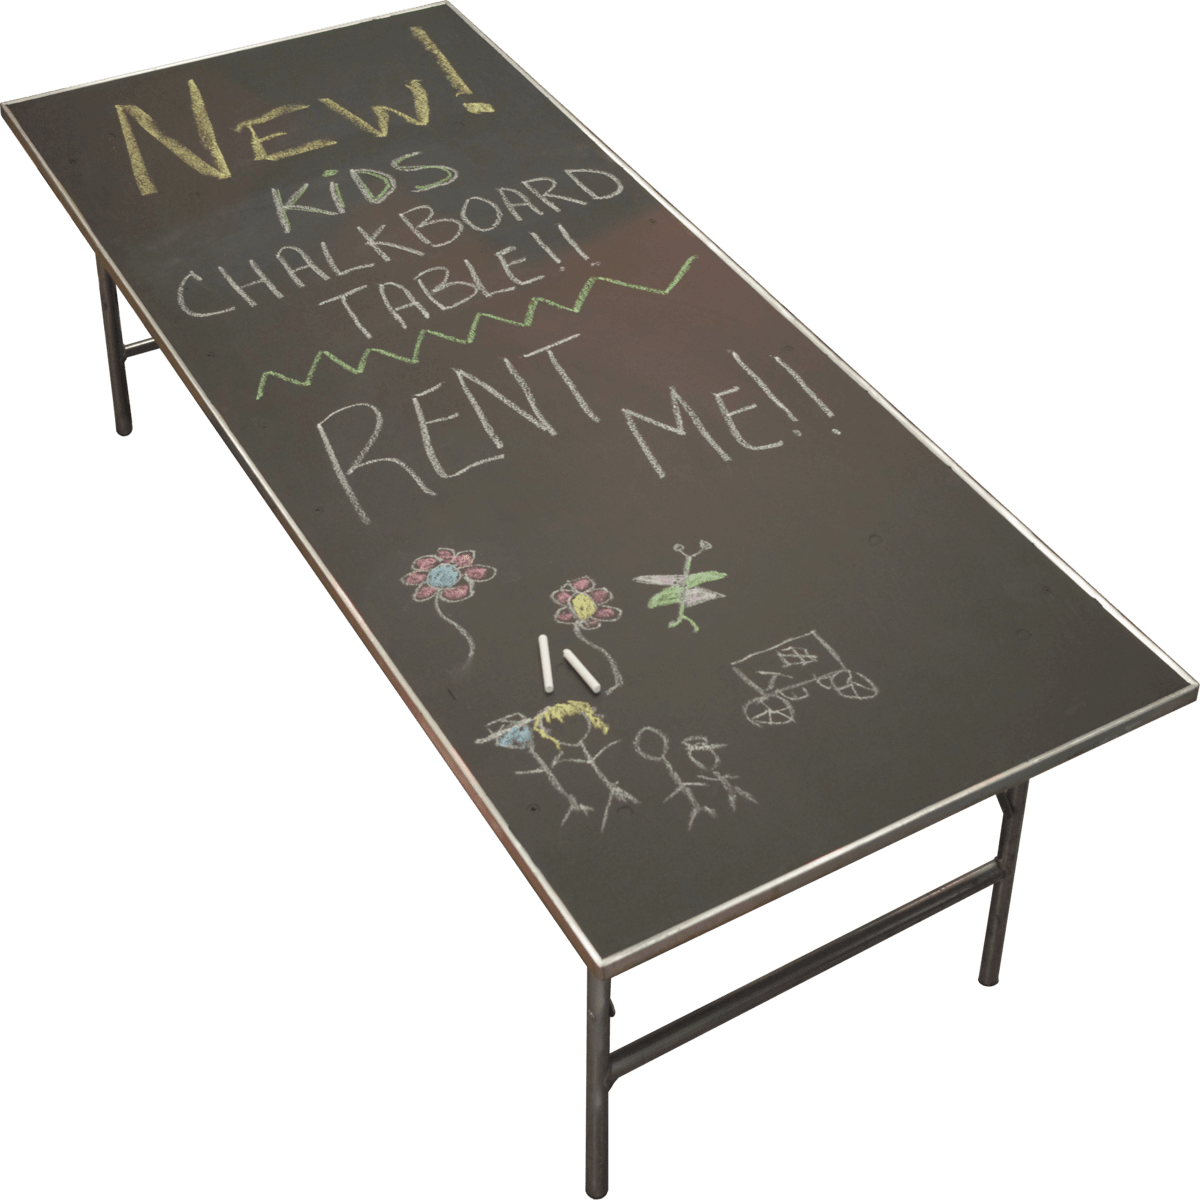 102c-chalkboard-table